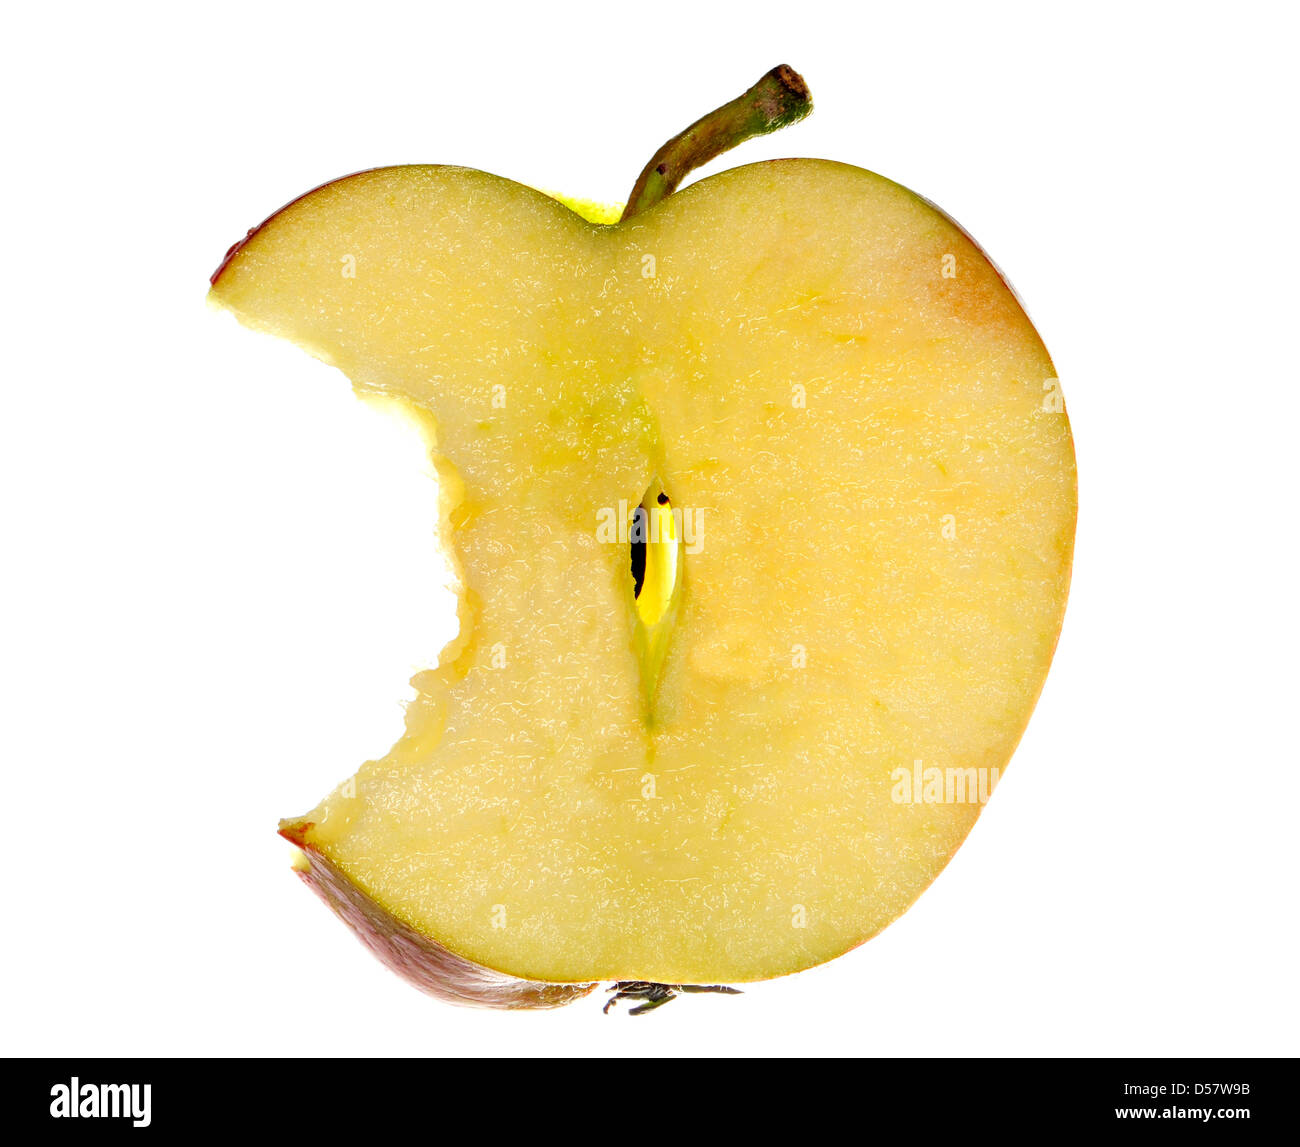 Dünne Scheibe des Apfels mit einem Biss herausgenommen Stockfoto